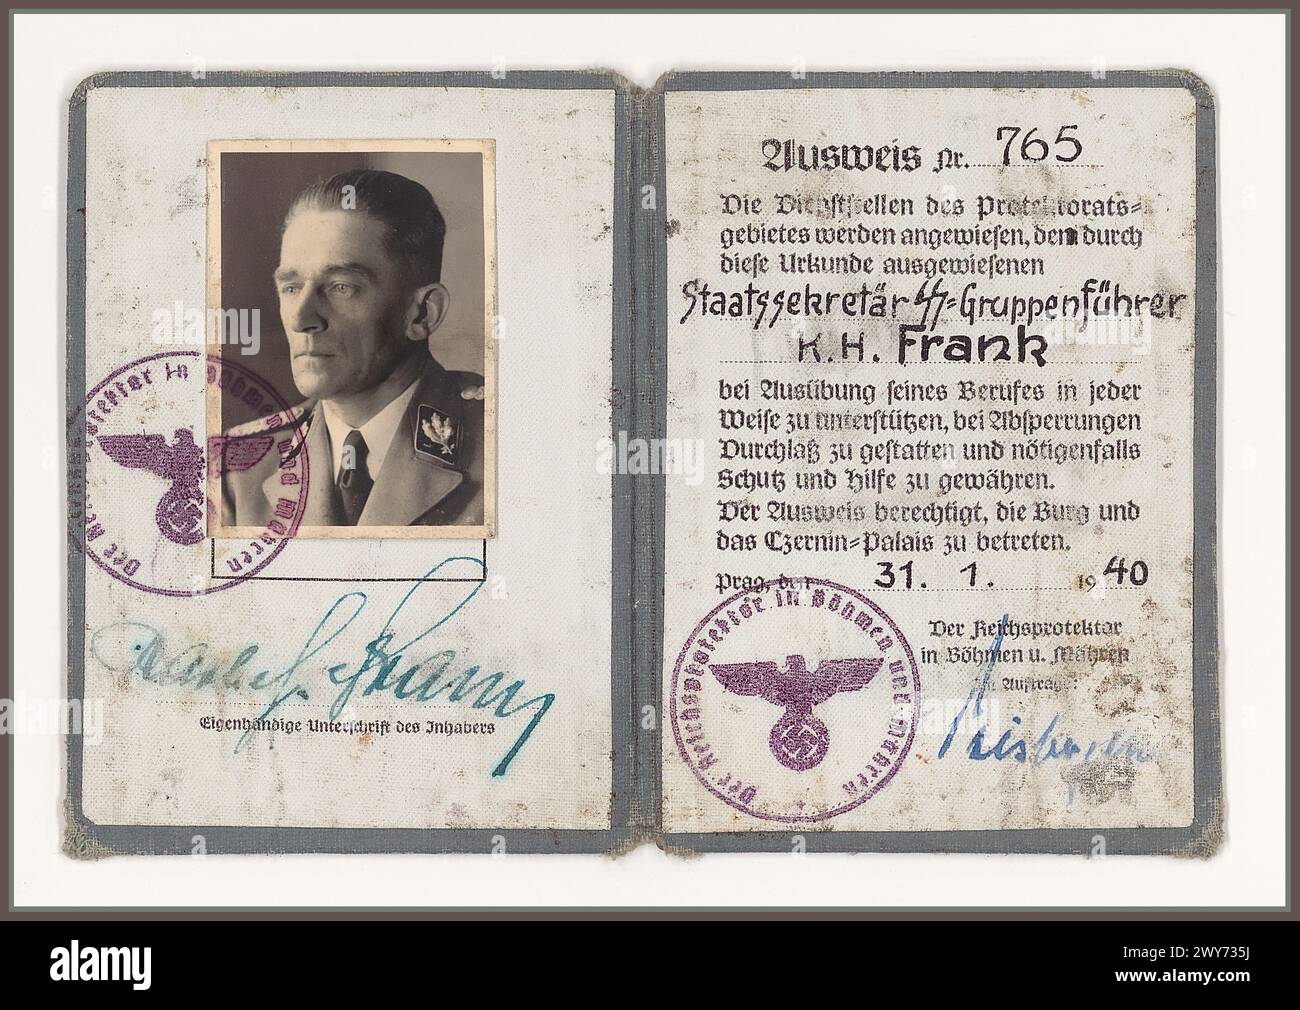 Document d'identité nazi Ausweis pour K. H. Frank à partir de 31.1.1940 toujours en tant que SS-Gruppenführer et secrétaire d'État au protecteur du Reich pour la Bohême et la Moravie, plus tard SS-Obergruppenführer et ministre d'État pour la Bohême et la Moravie. Partie du dossier du procès de K. H. Frank au tribunal populaire extraordinaire de Prague. Cour populaire extraordinaire Prague, K. H. Frank, après la guerre, il a été jugé, condamné et exécuté par pendaison pour son rôle dans l'organisation des massacres des habitants des villages tchèques de Lidice et Ležáky. Banque D'Images